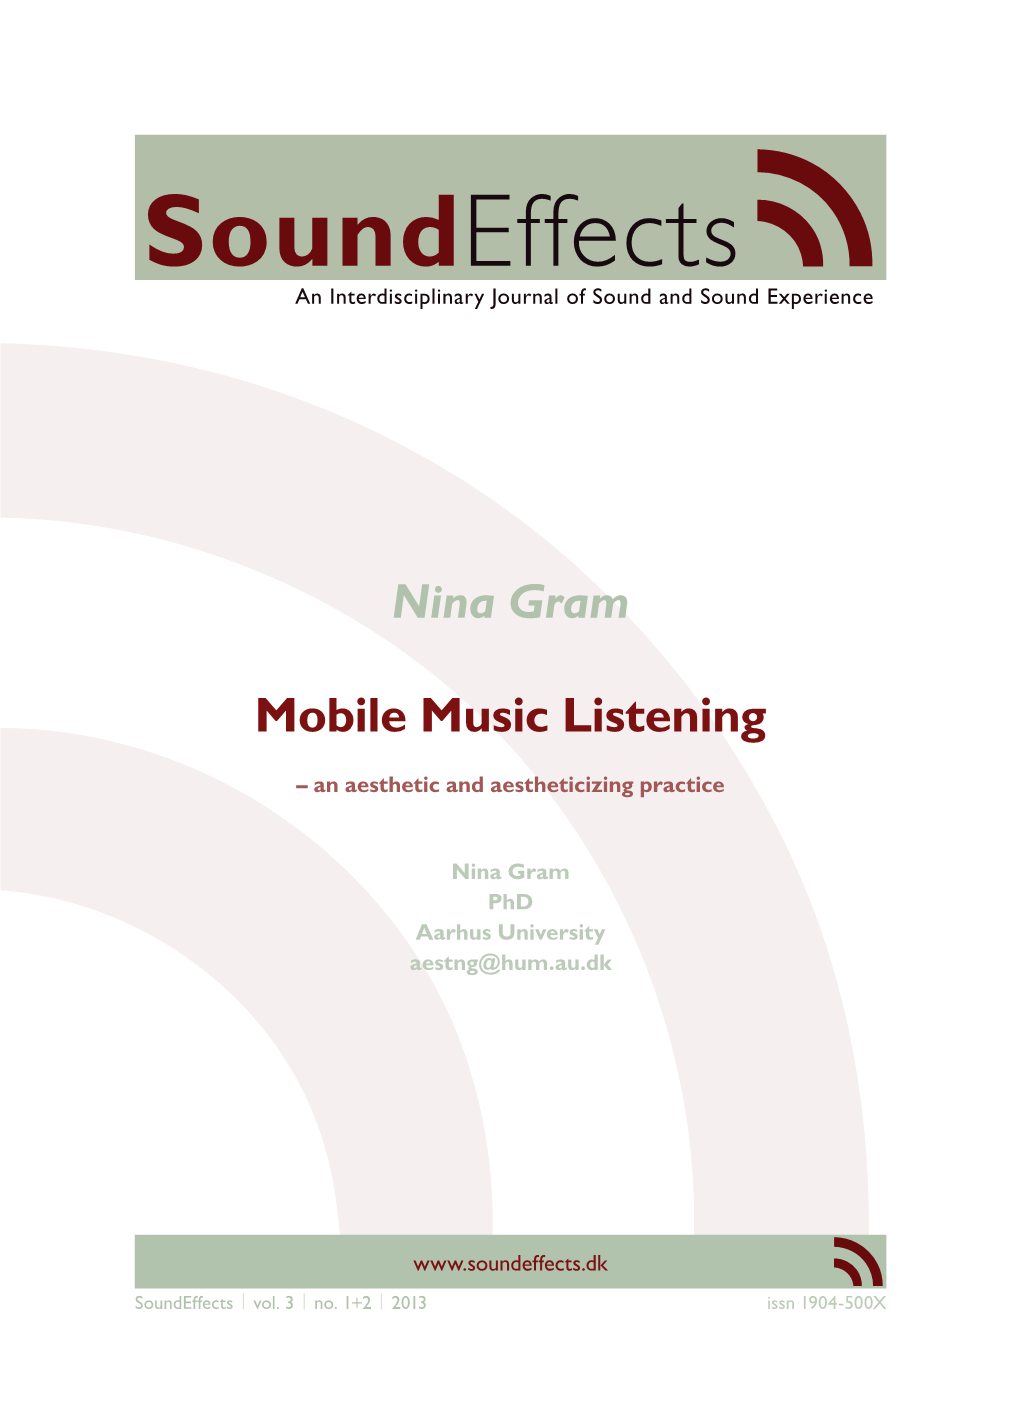 Nina Gram Mobile Music Listening